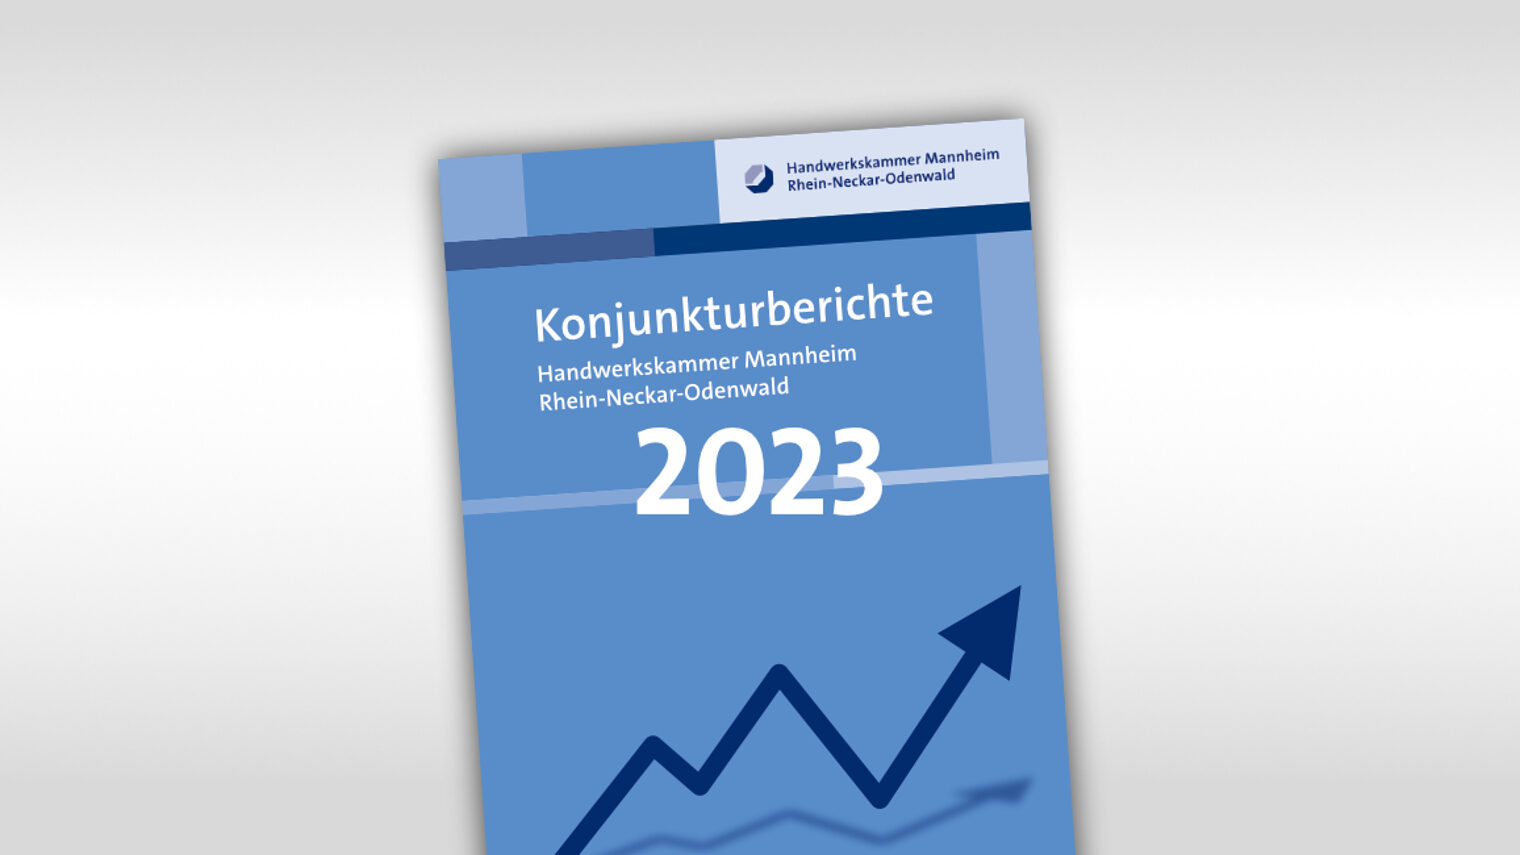 Titelmotiv Konjunkturbericht plus Jahreszahl 2023